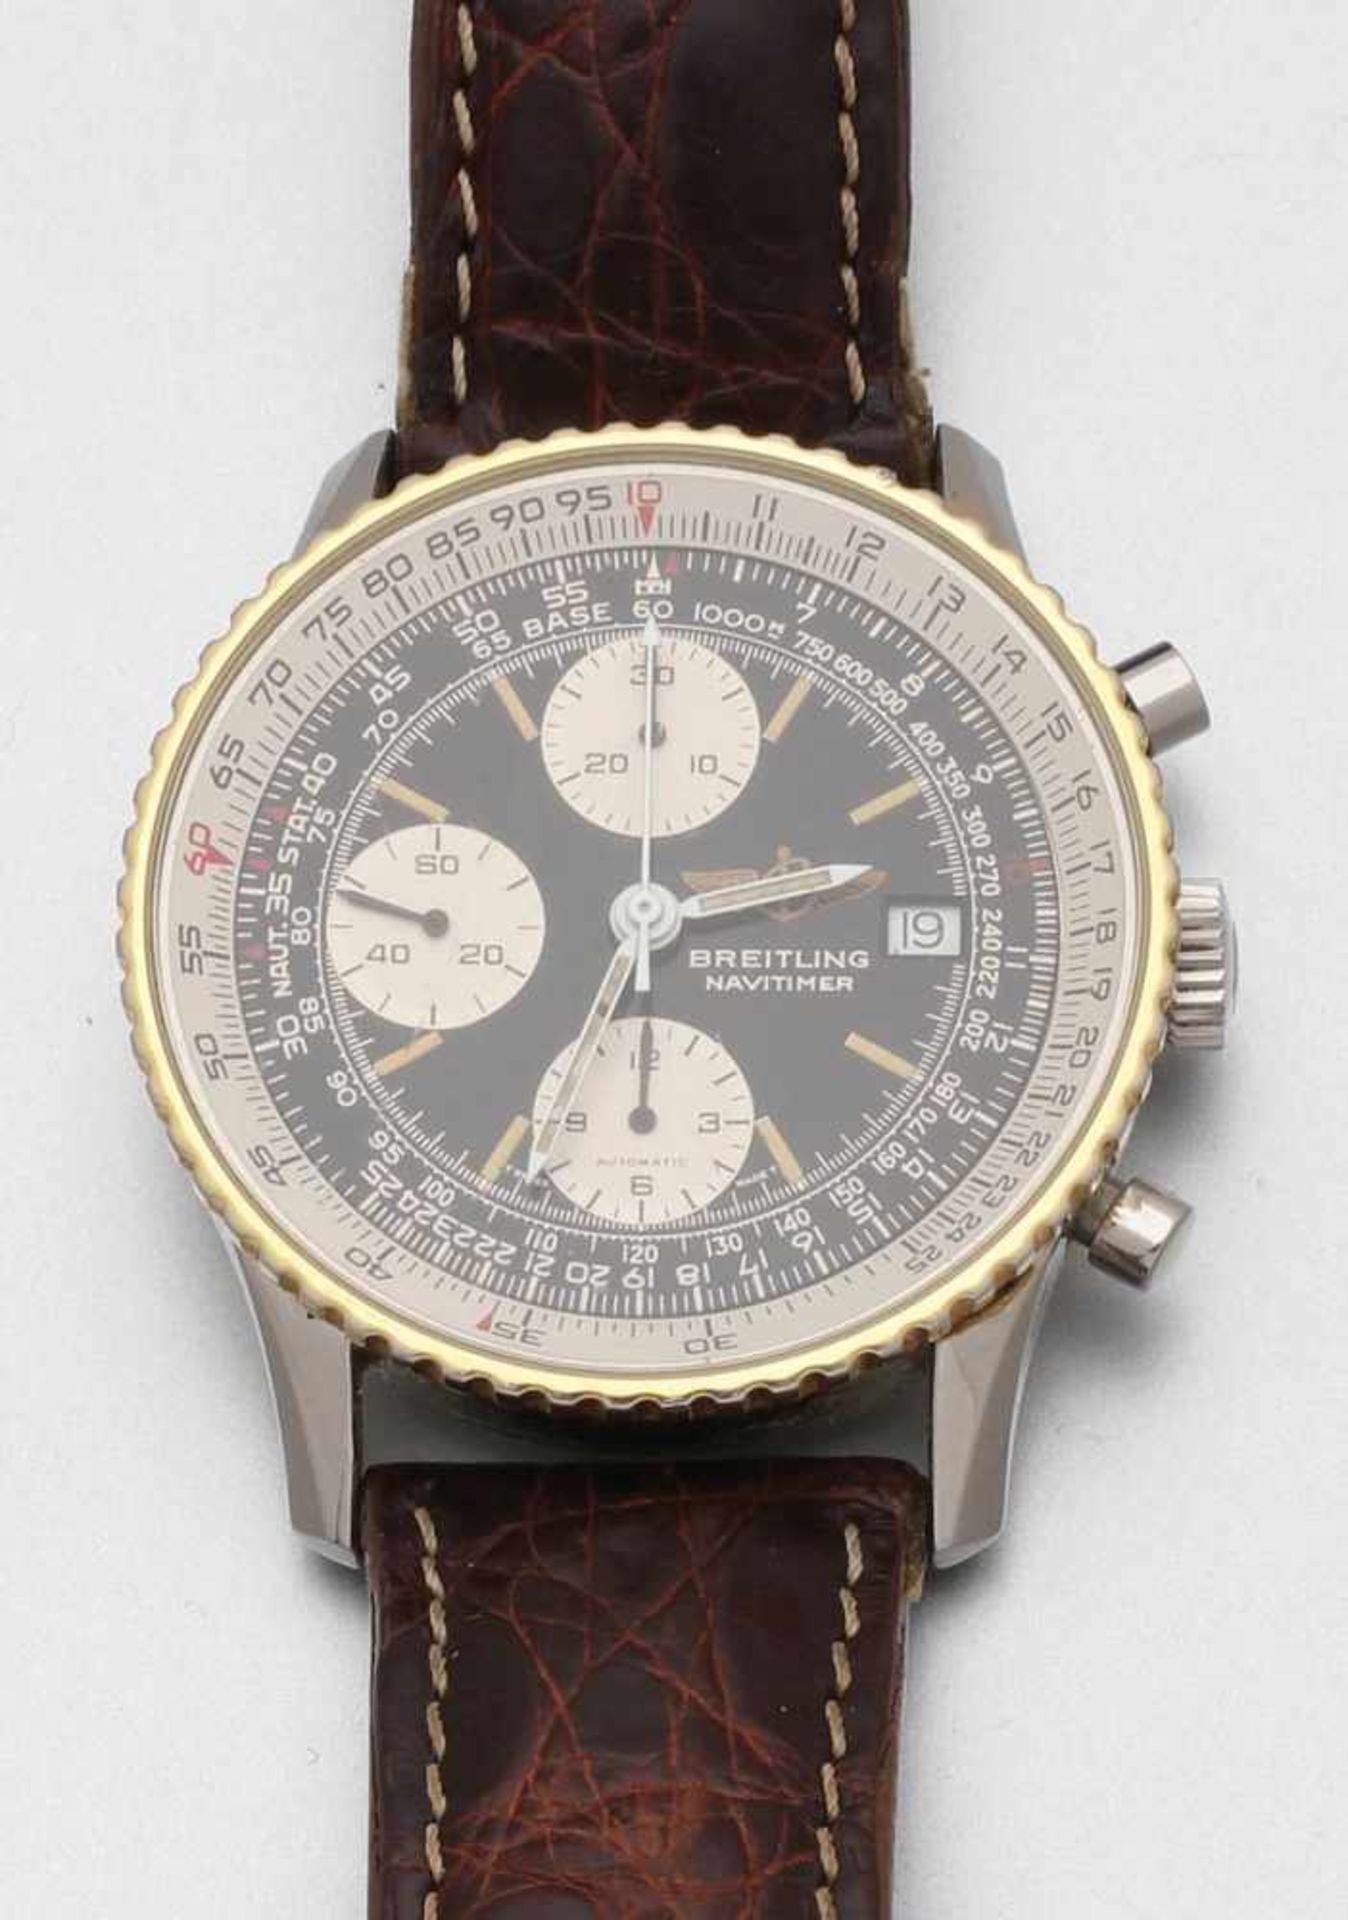 Breitling-Herrenchronometer Fa. Breitling, Schweiz. Modell: Old Navitimer Chronograph. Edelstahl/